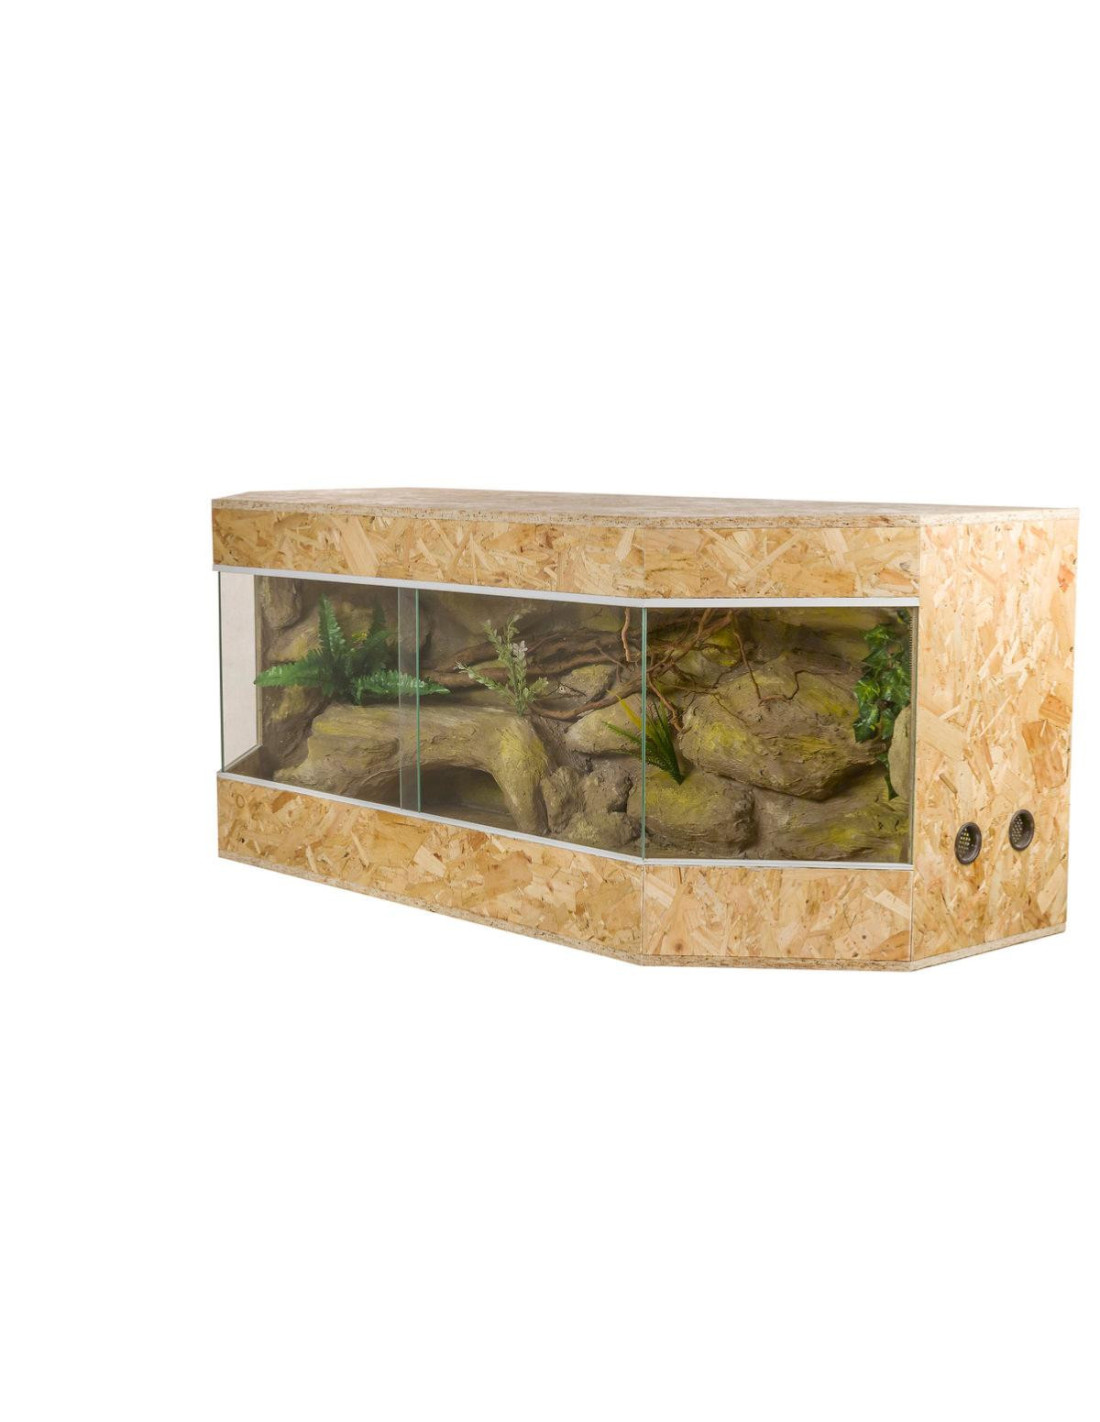 Mangeoire en plastique pour amphibiens et reptiles, terrarium pour